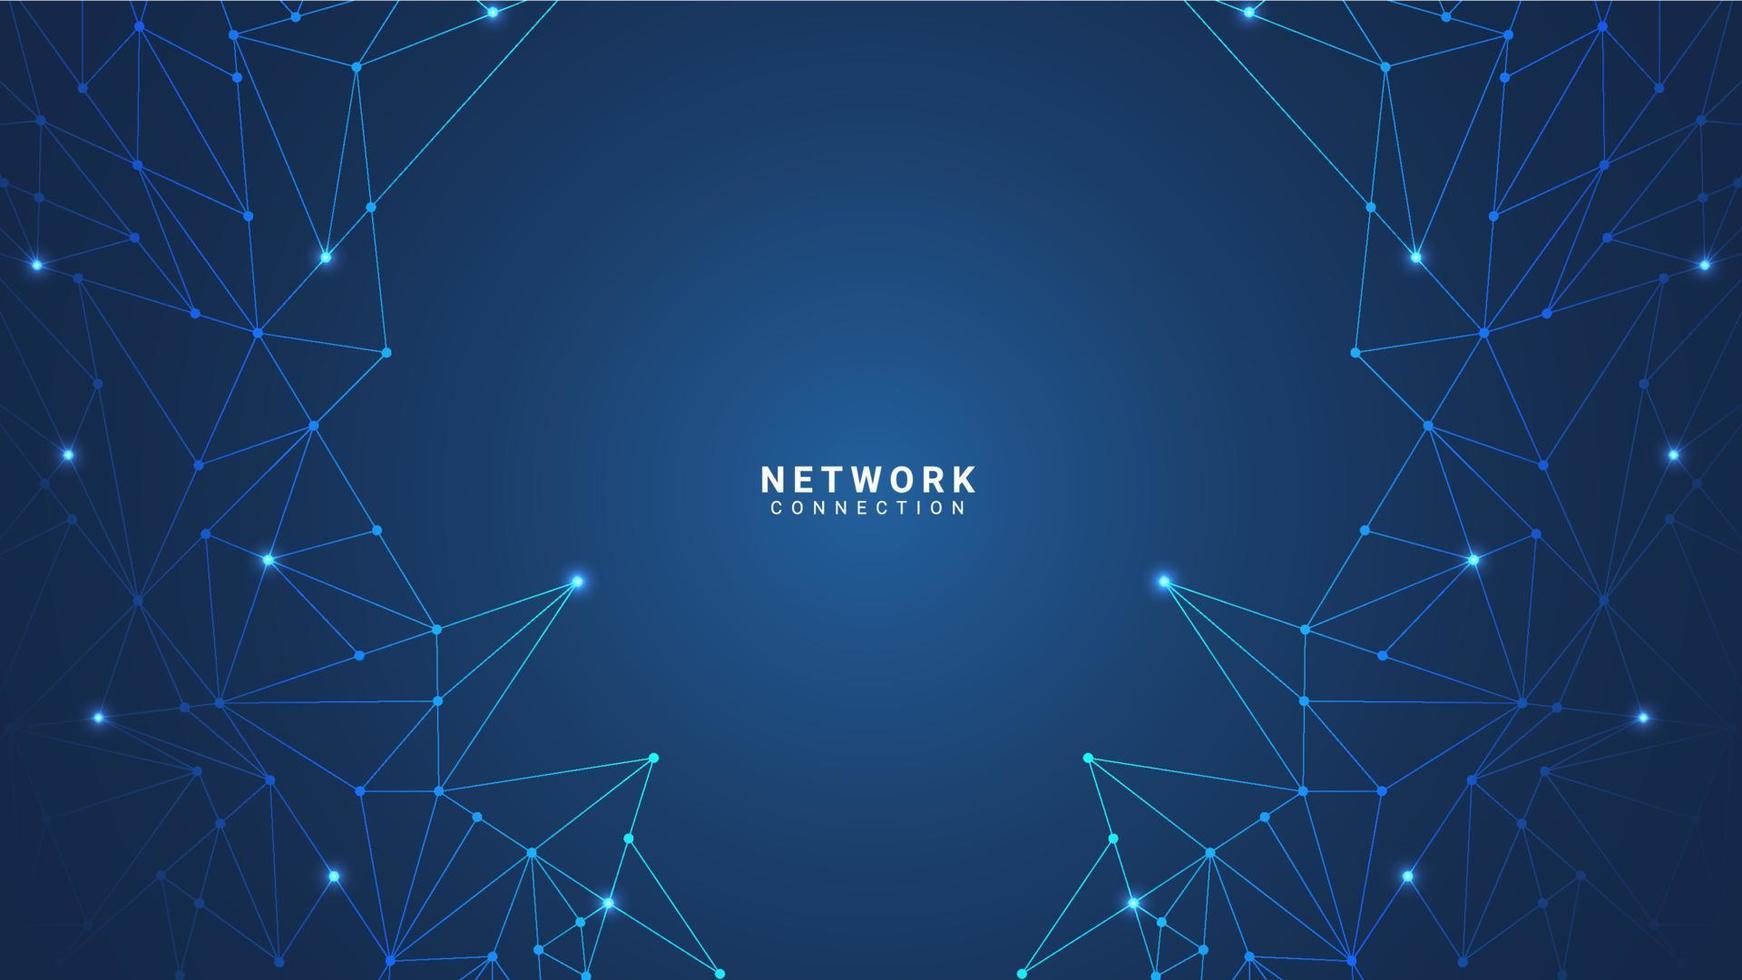 teknologi bakgrund design med nätverk förbindelse vektor